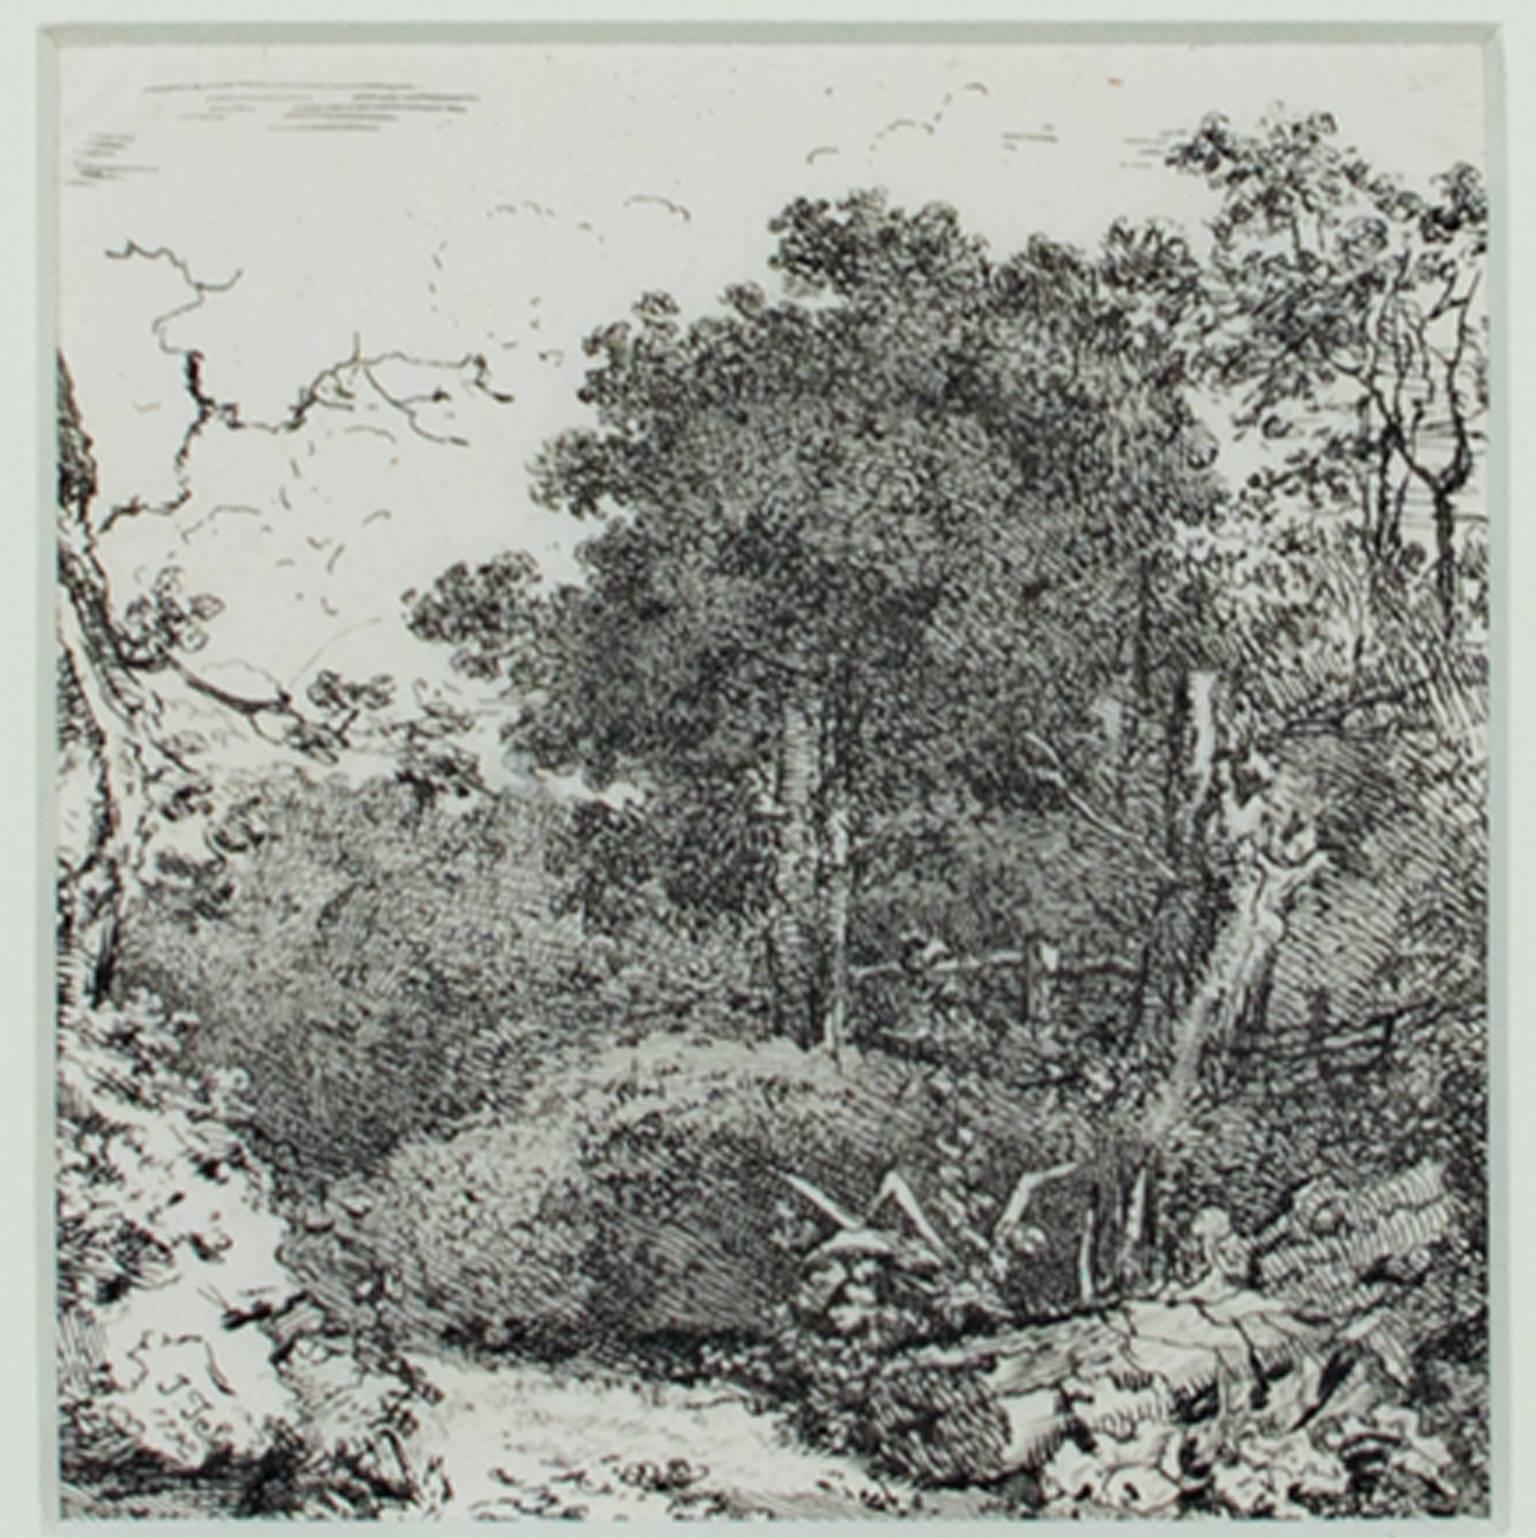 "Forest Glen" ist eine Originalradierung von John Thomas Smith. Das Stück wurde in der Platte paraphiert. Es zeigt einen kleinen Eingang zu einem üppigen Wald. 

3 5/8" x 3 1/2" Kunst
12 7/8" x 12 3/4" Rahmen

John Thomas Smith (1766-1833) wurde als